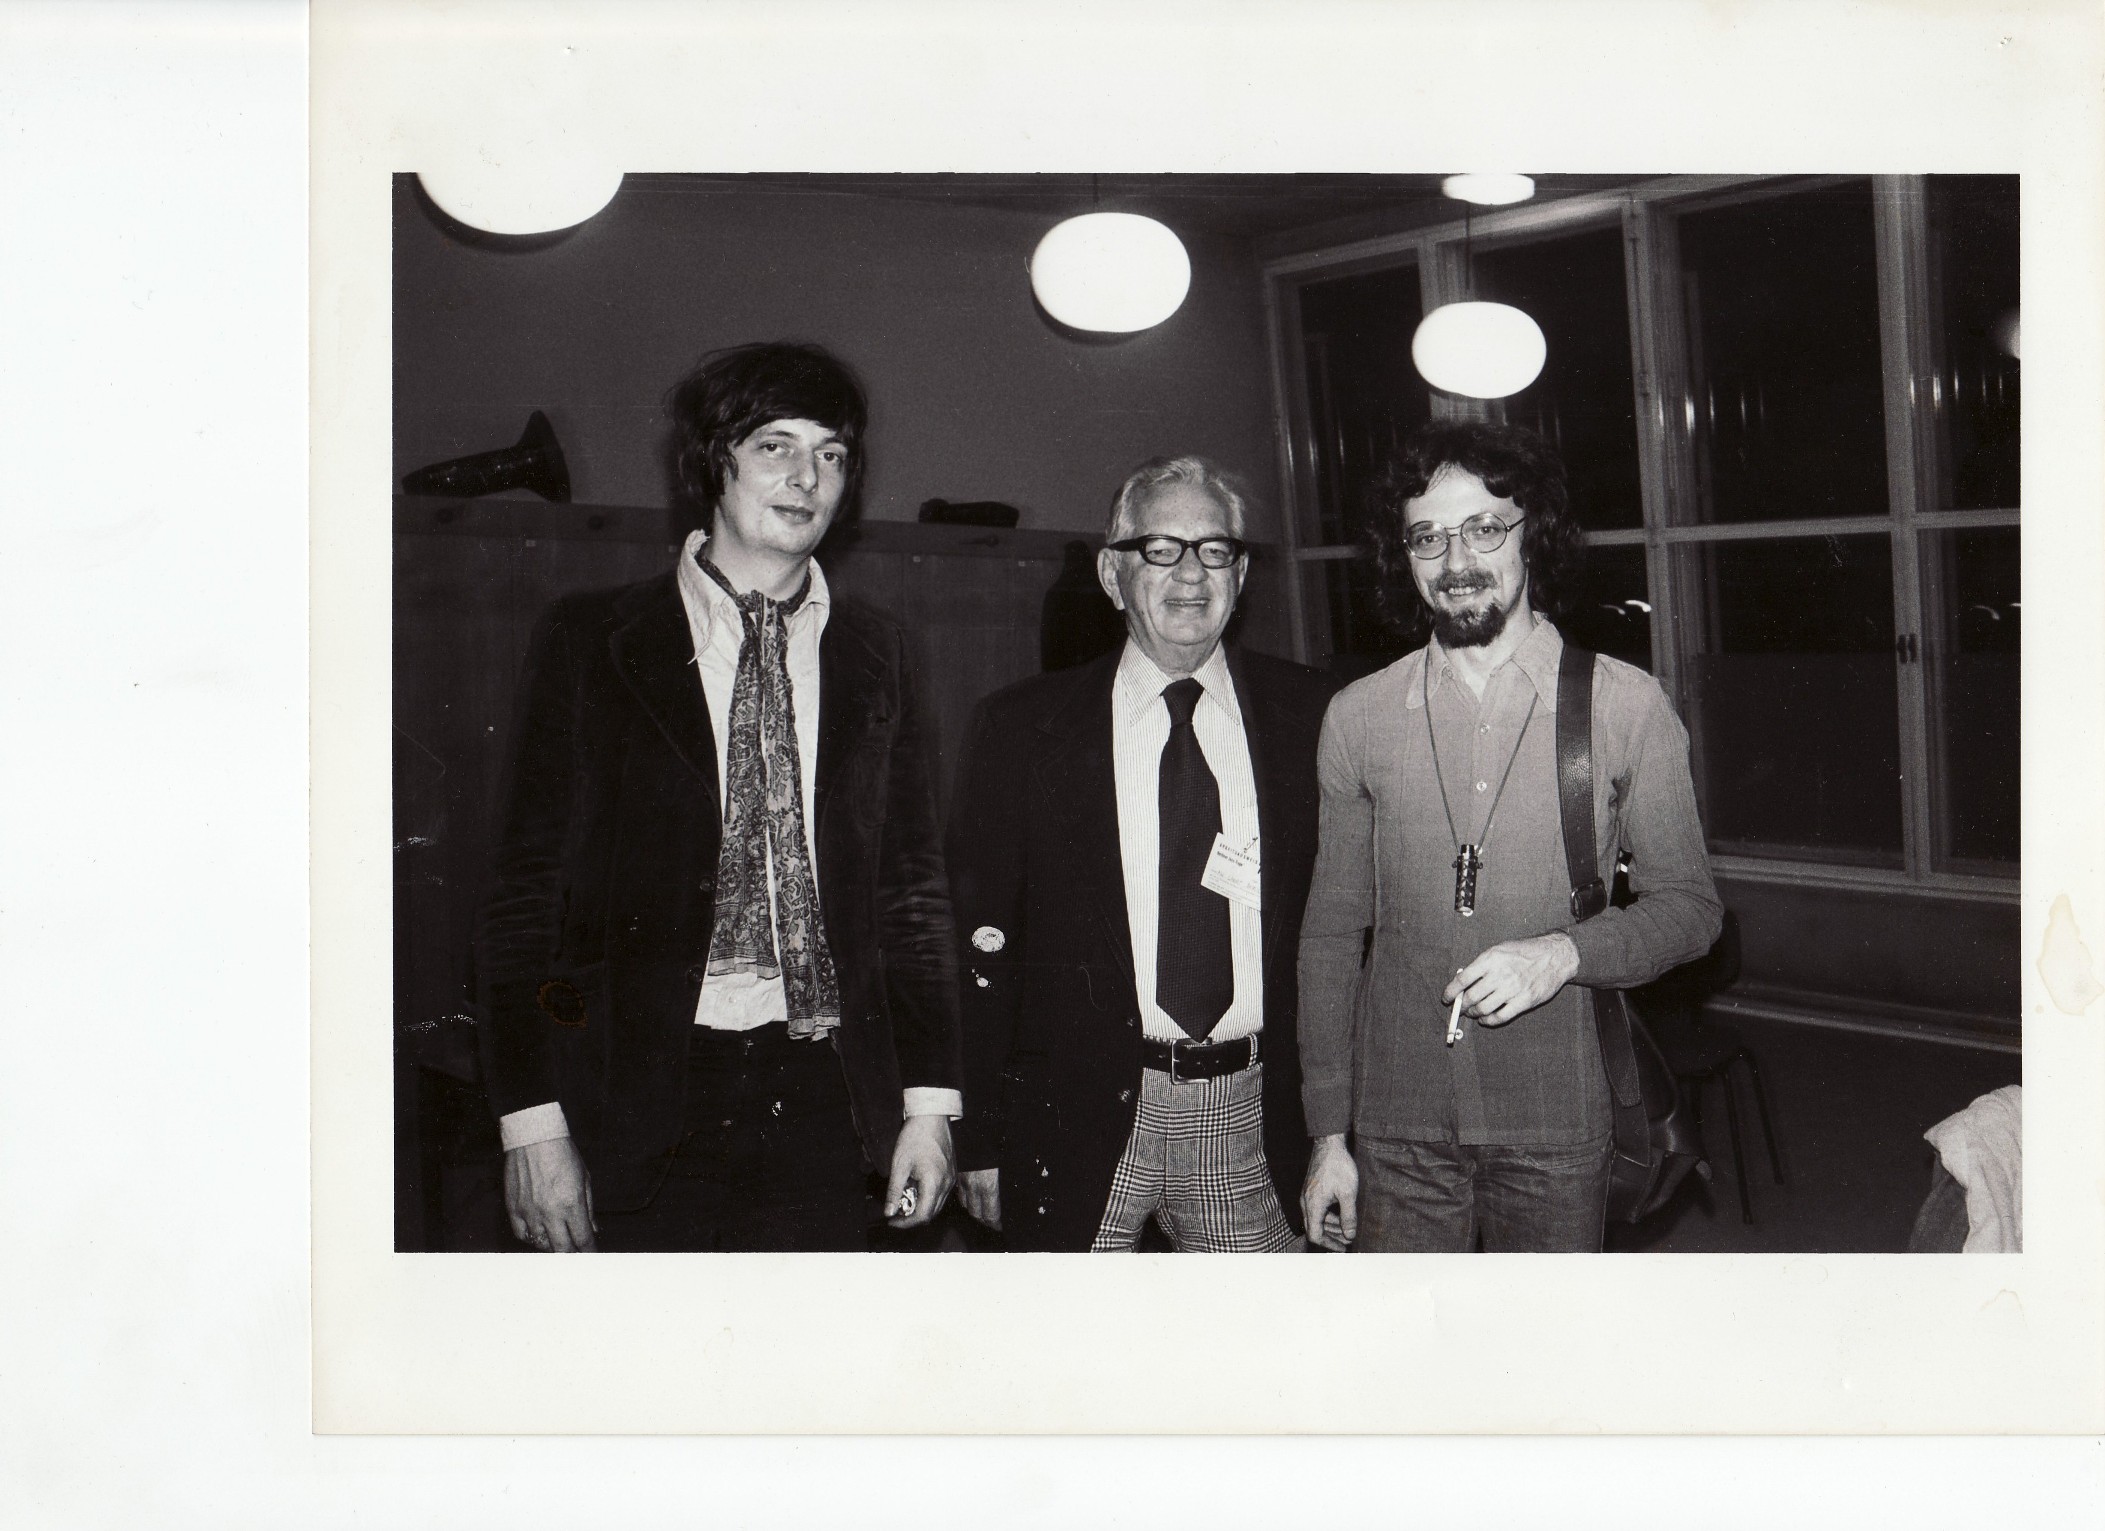 Od lewej: Philip Catherine, Lawrence Berk założyciel Berklee School of Music i Zbyszek Seifert